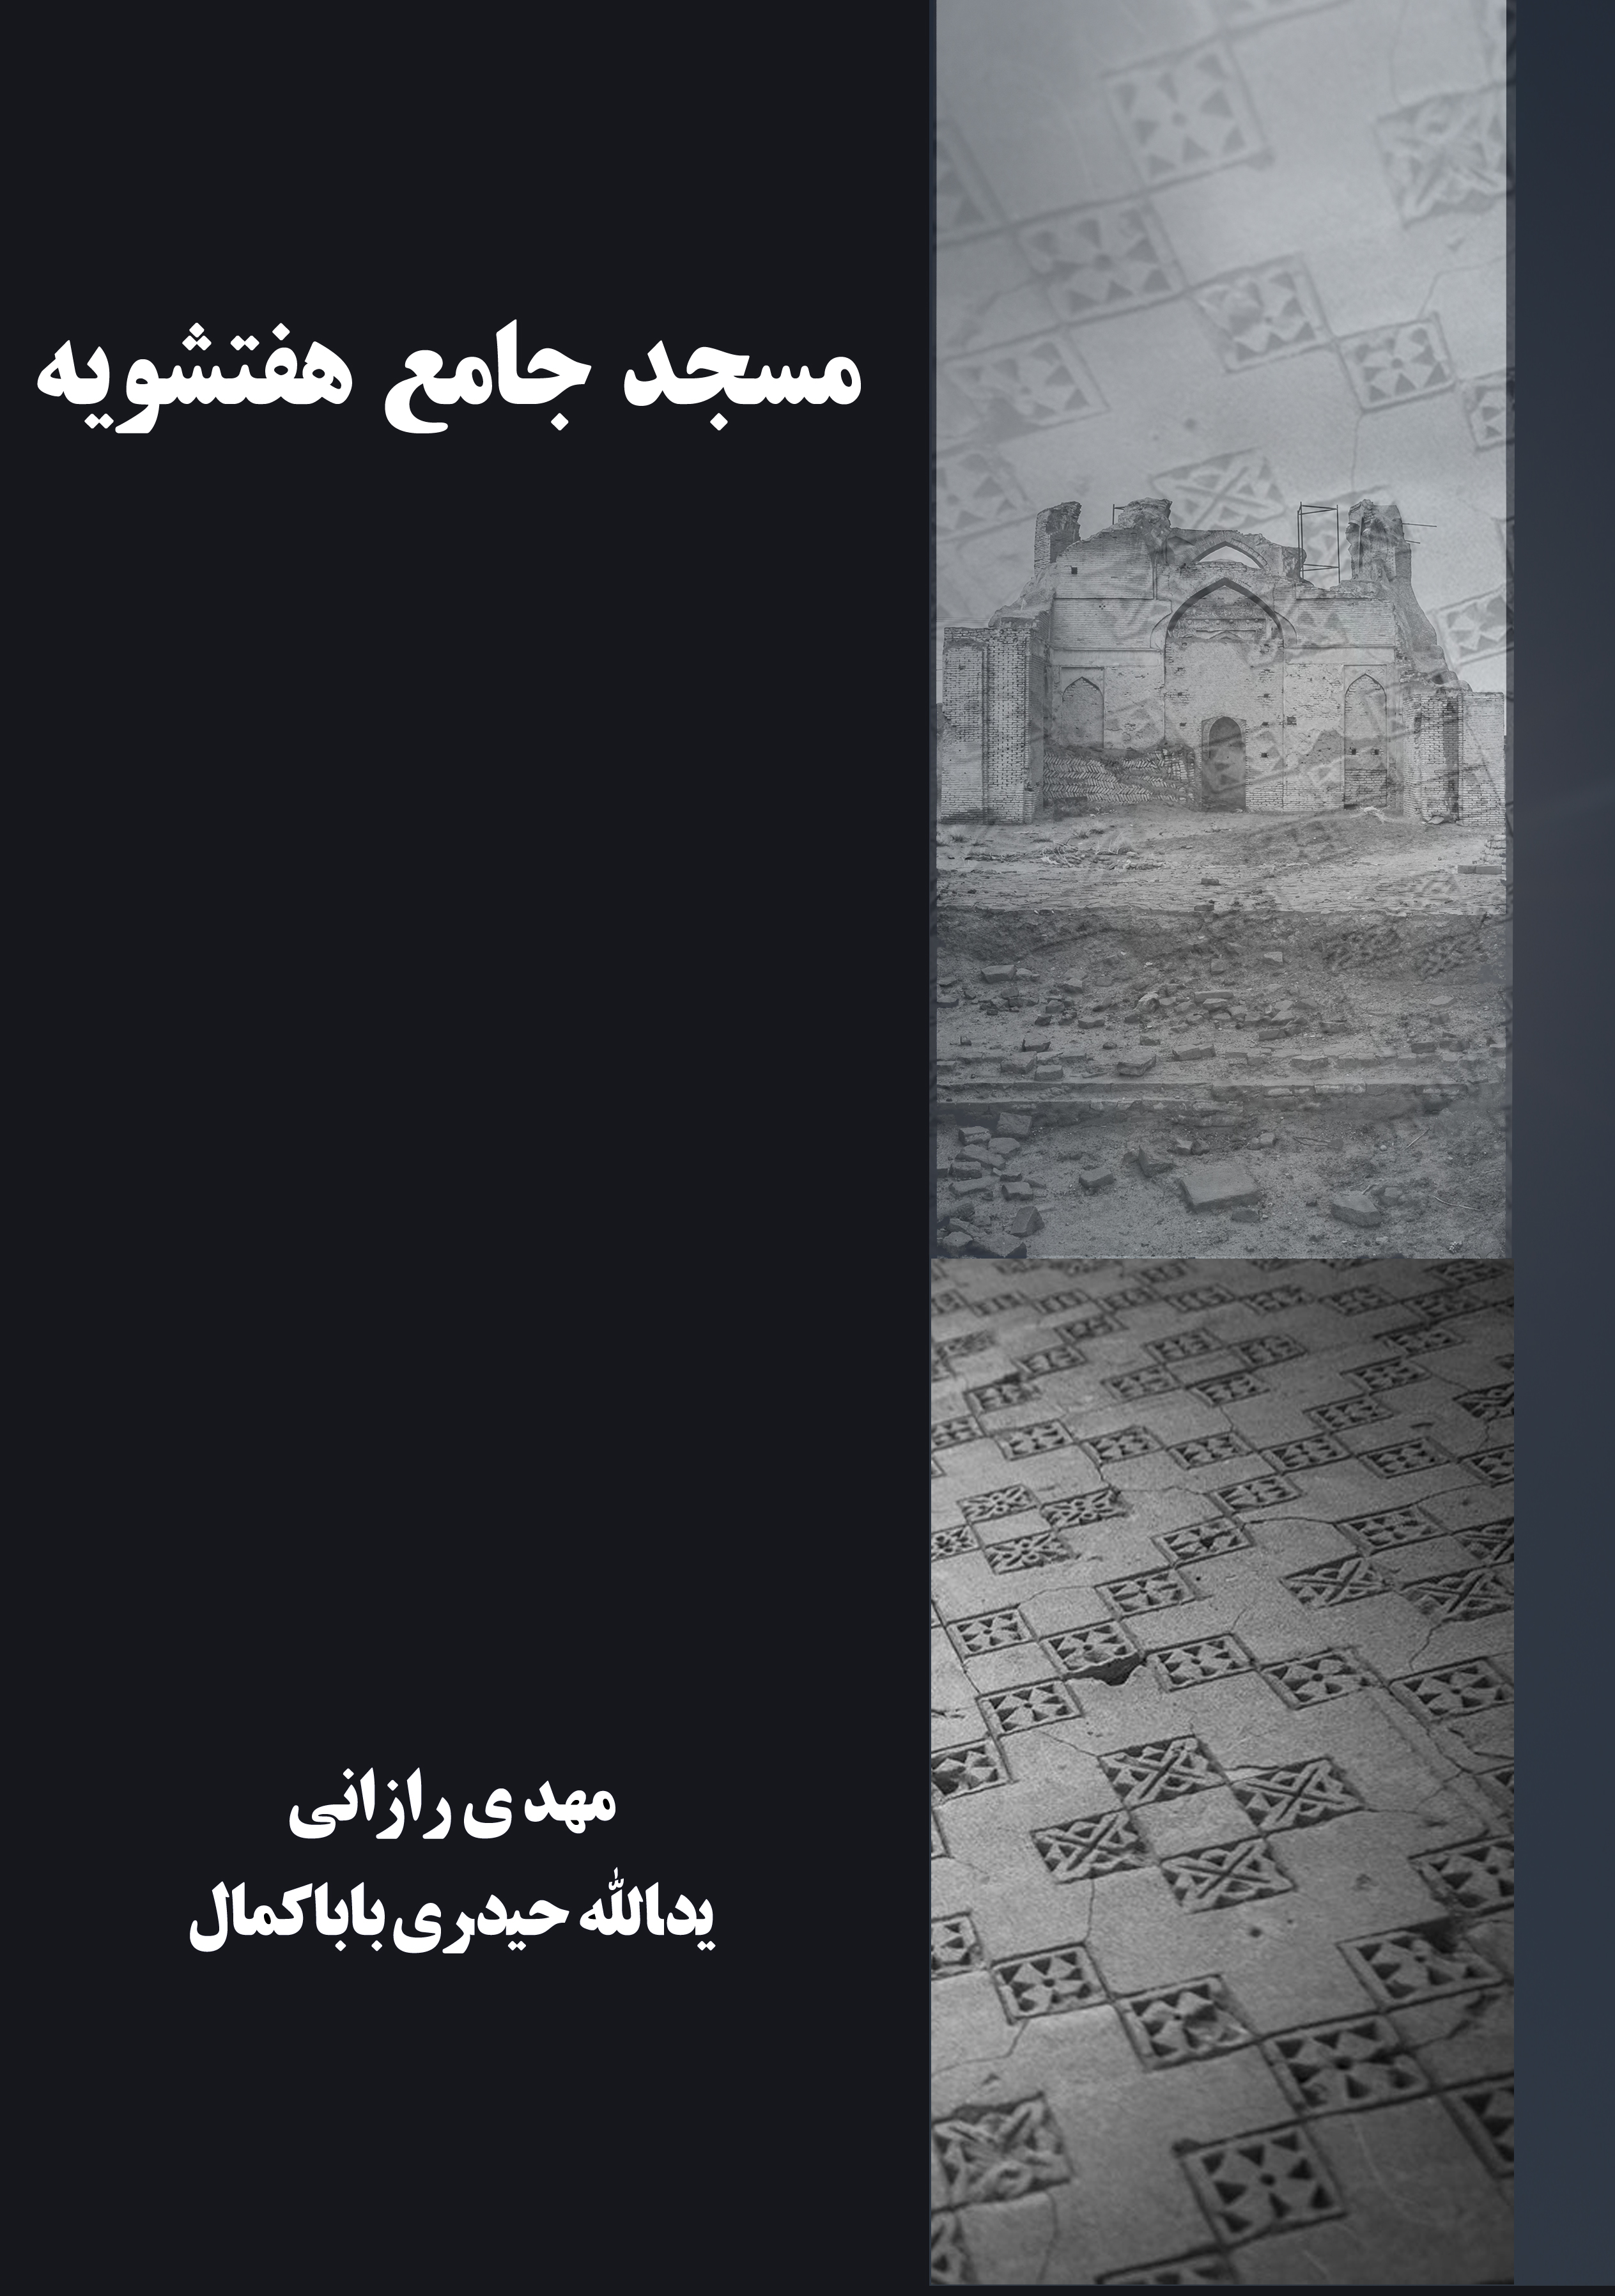 جلد اولیه کتاب مسجد جامع هفتشویه